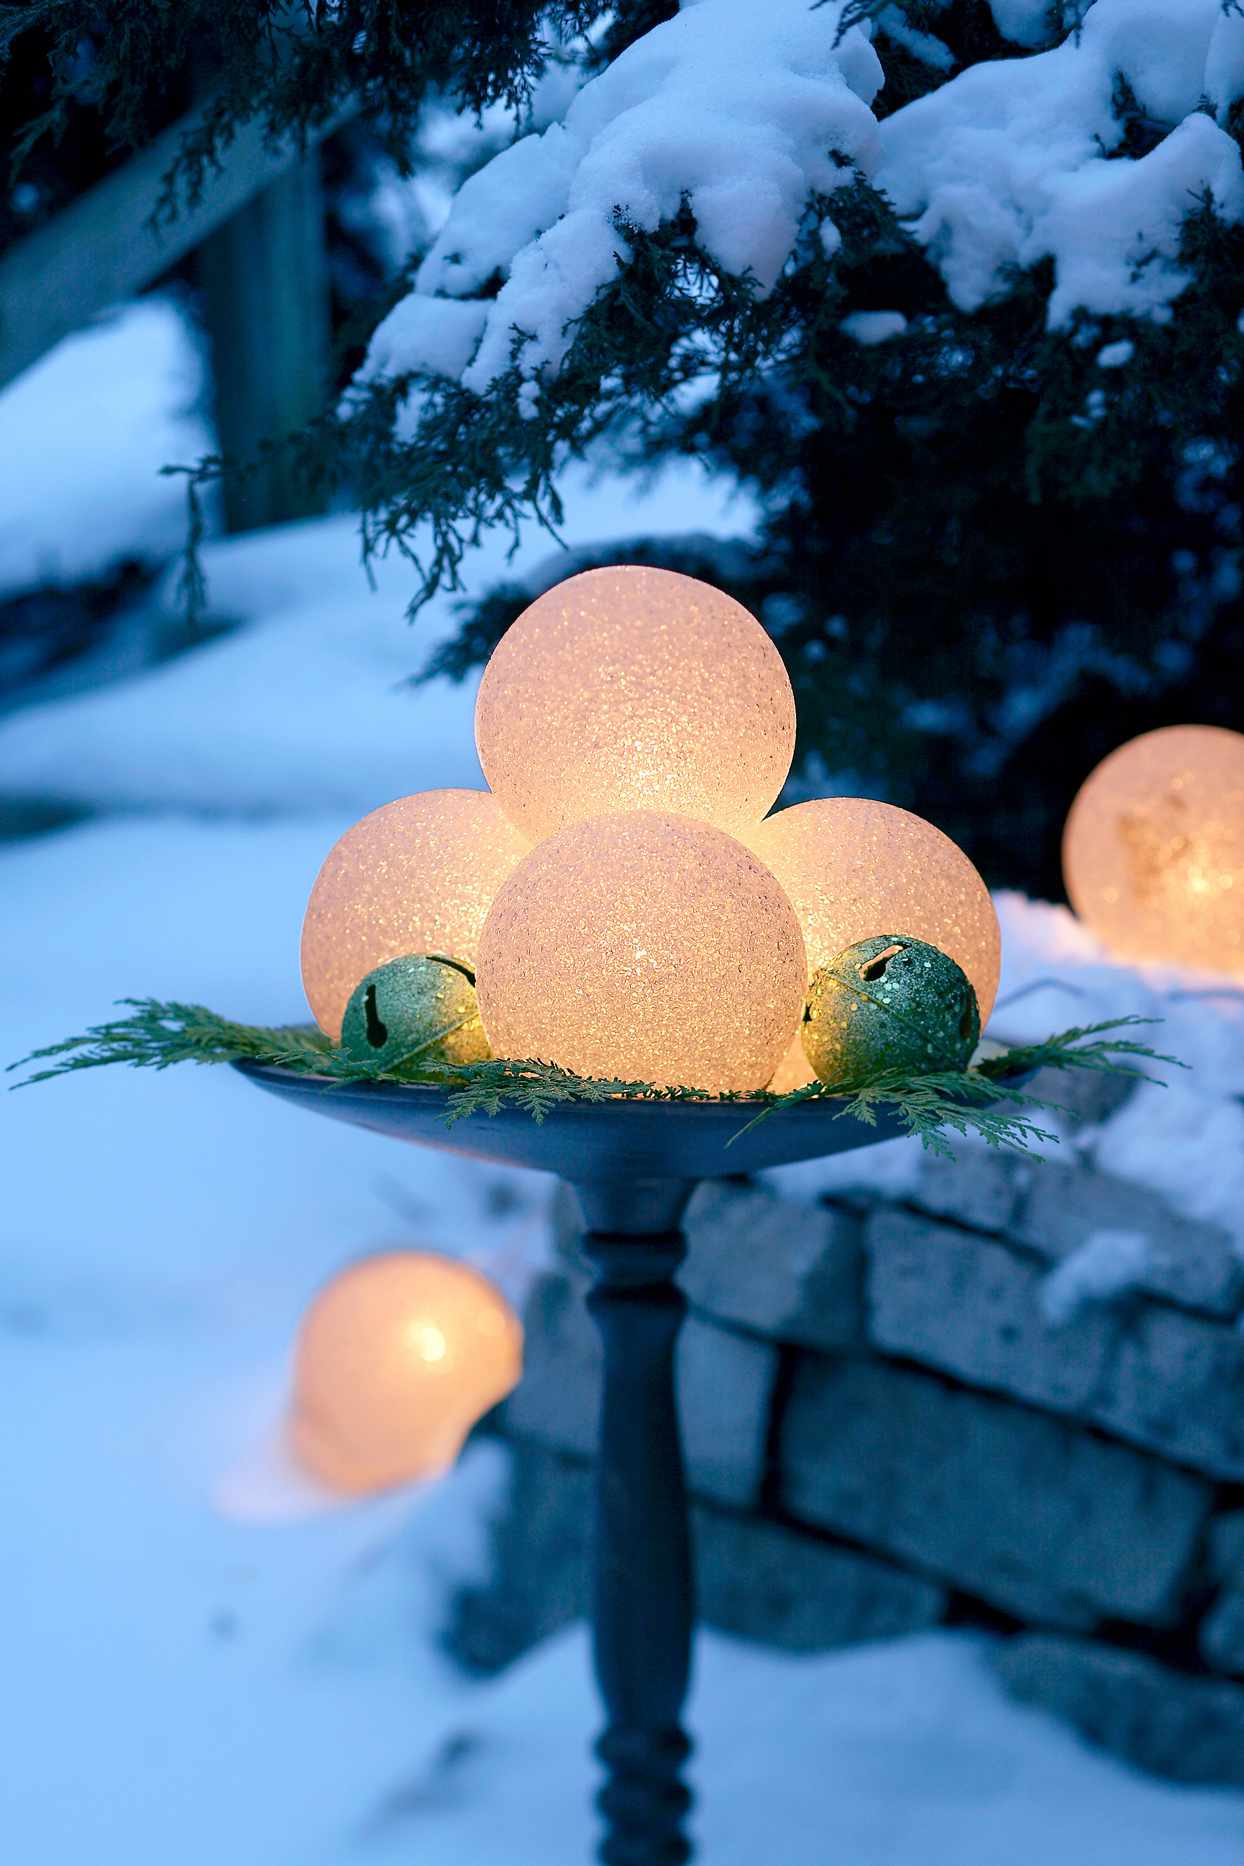 glowing holiday orbs atop snowy birdbath